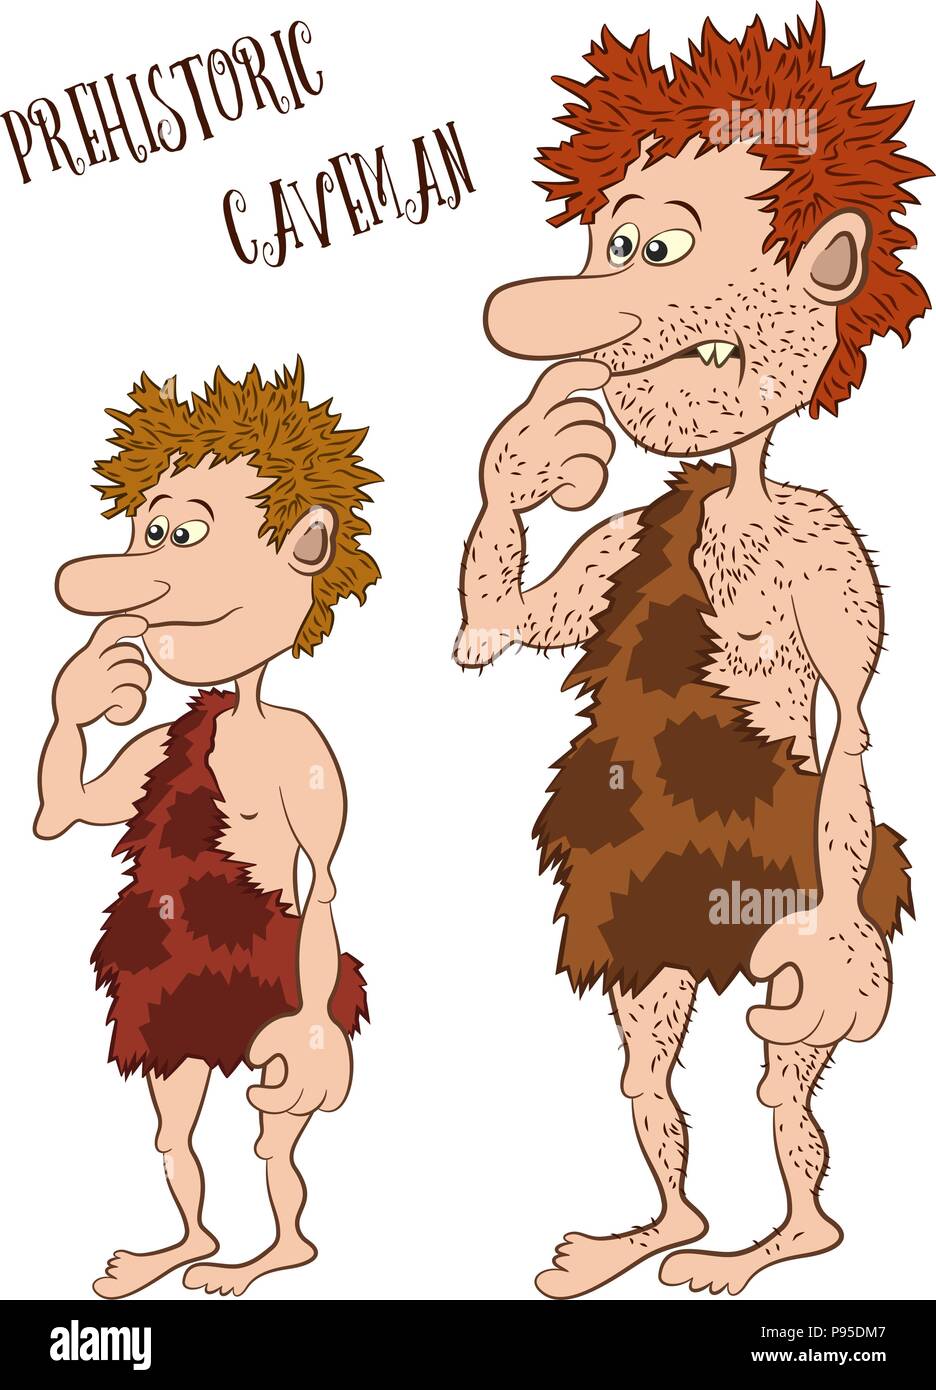 I personaggi dei cartoni animati, uomo e ragazzo, padre e figlio,  preistorici Caveman in pelle di animale, isolato su sfondo bianco. Vettore  Immagine e Vettoriale - Alamy